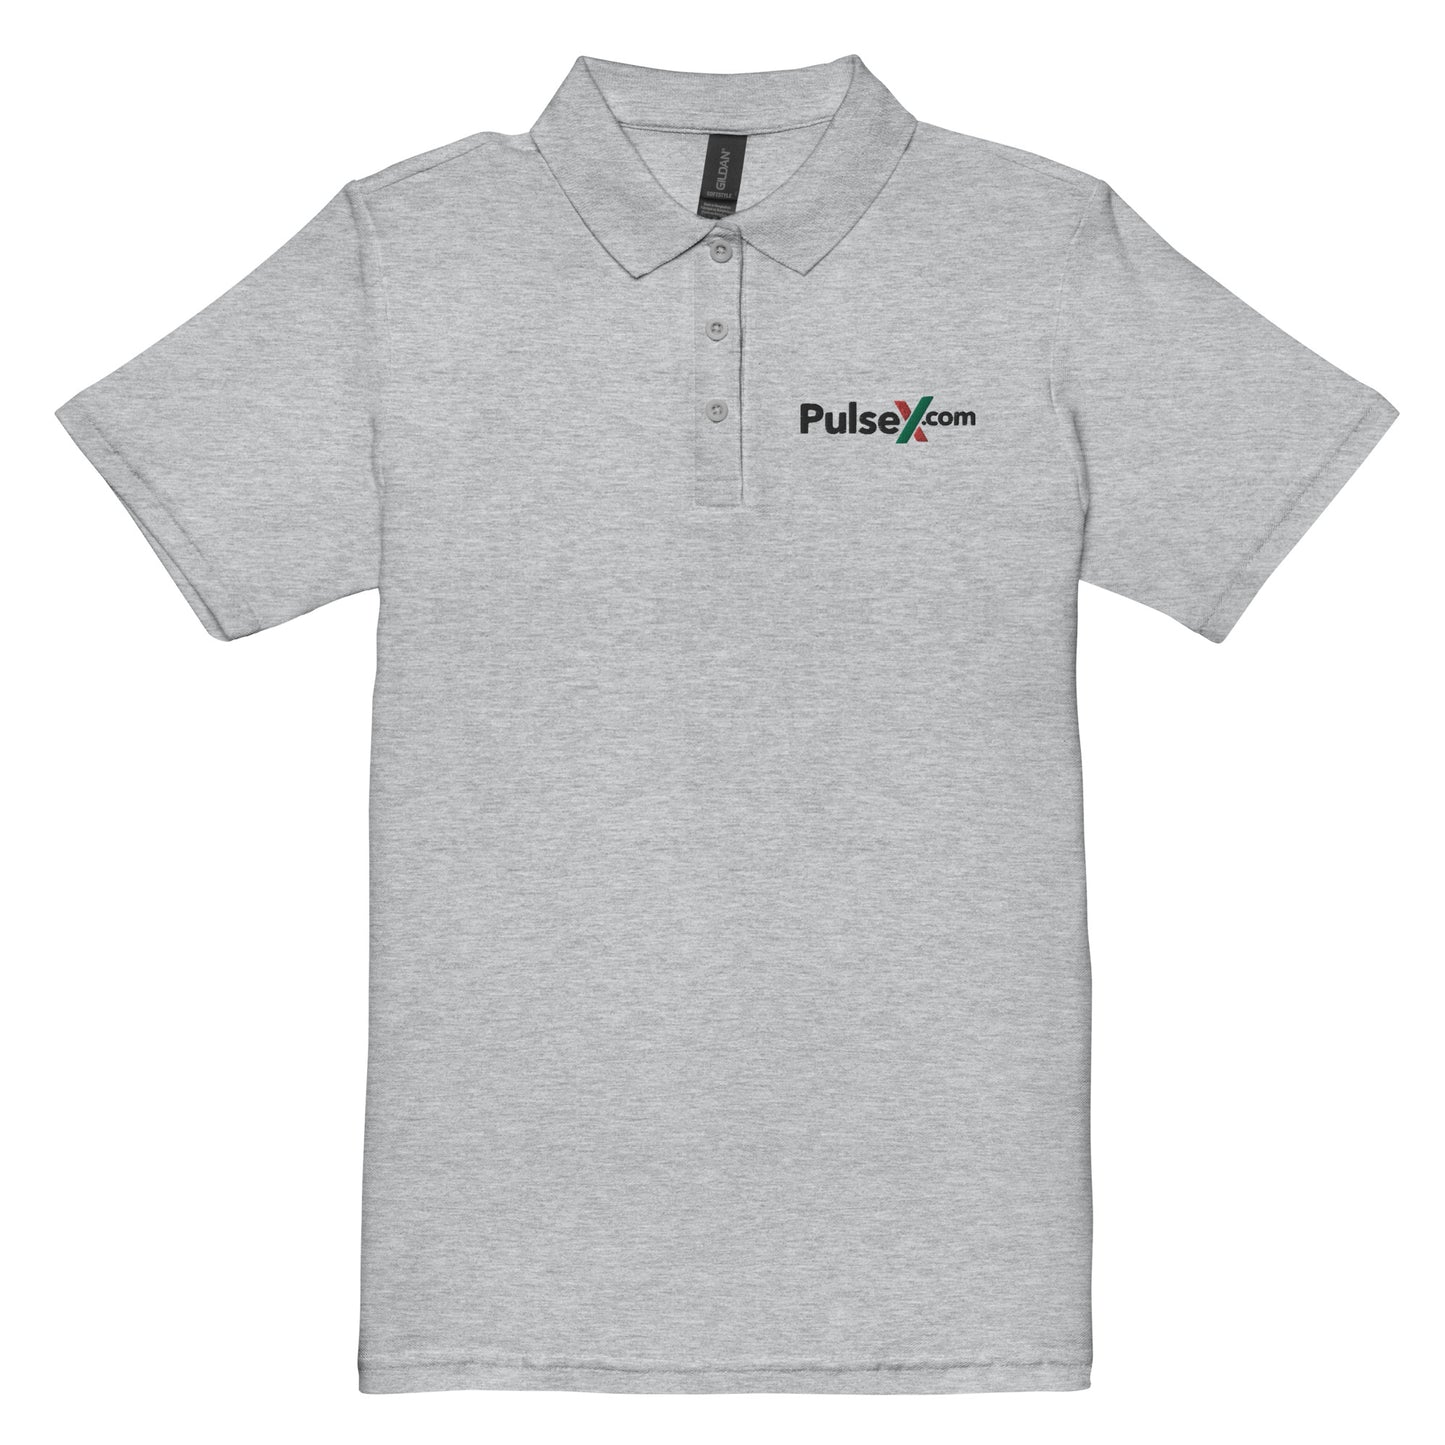 PulseX.com Women’s Pique Polo Shirt (Embroidered)